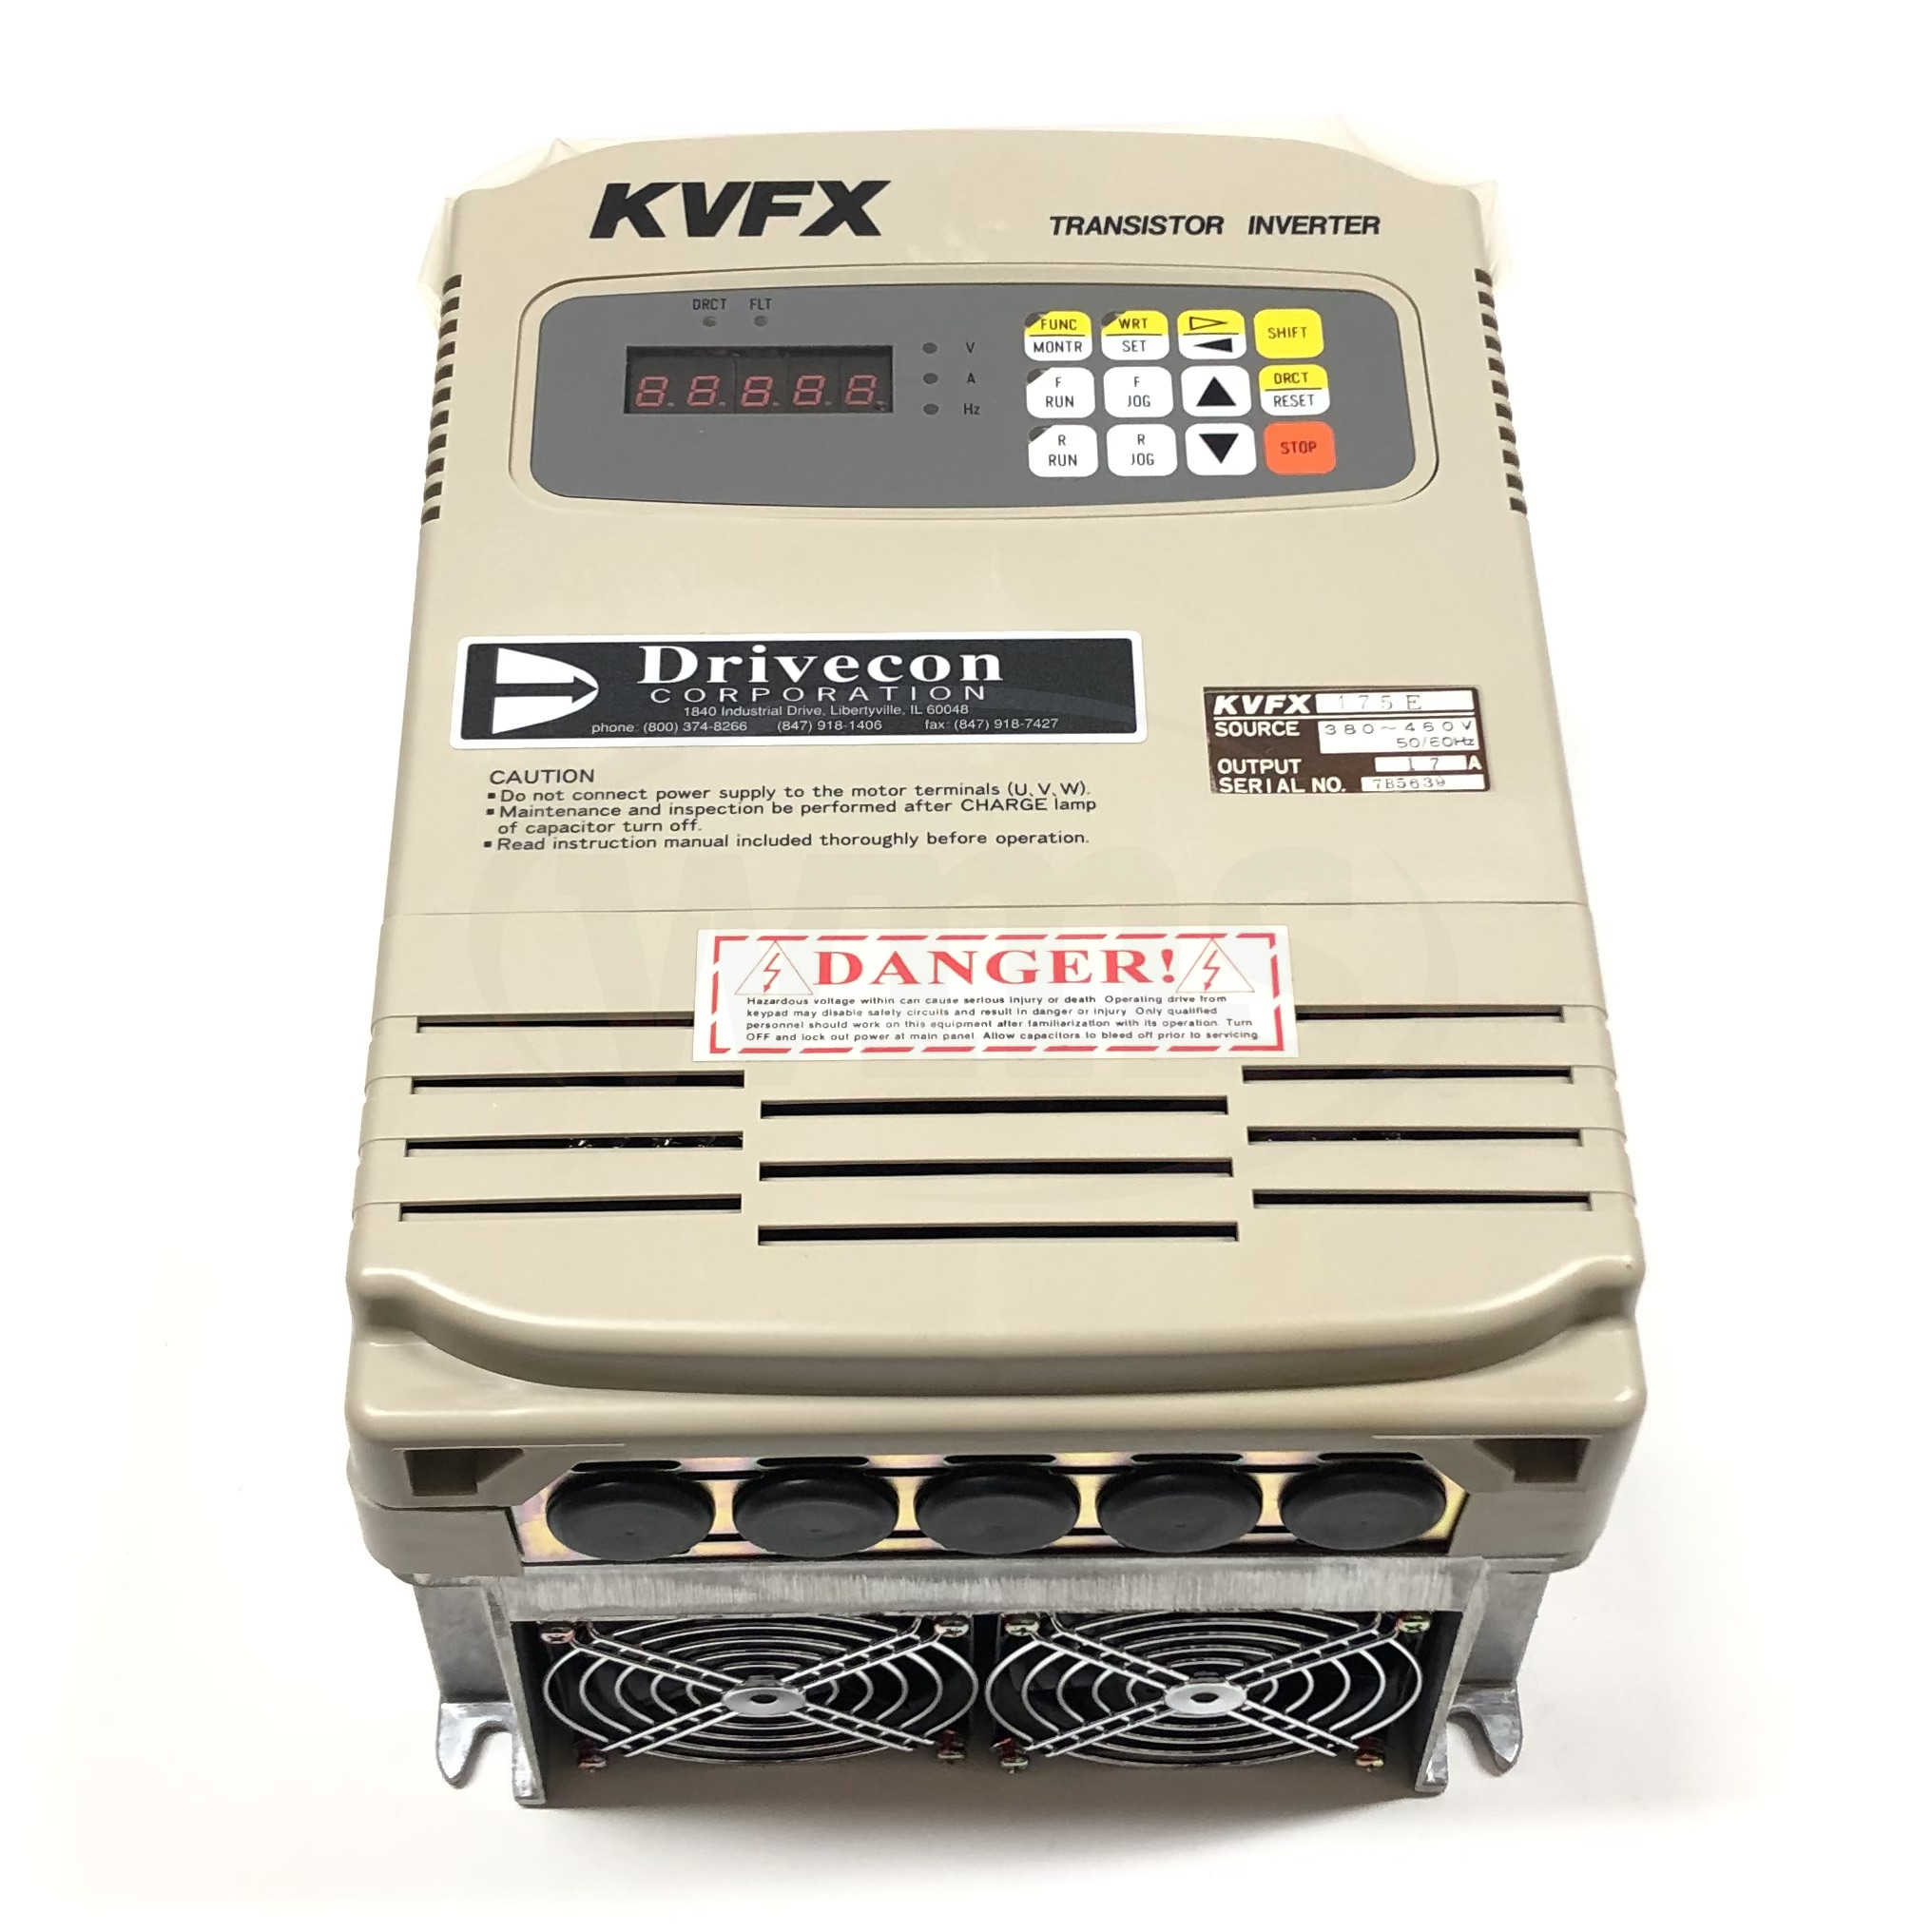 KVFX-475-E 10HP Drivecon Transistor Inverter, 1